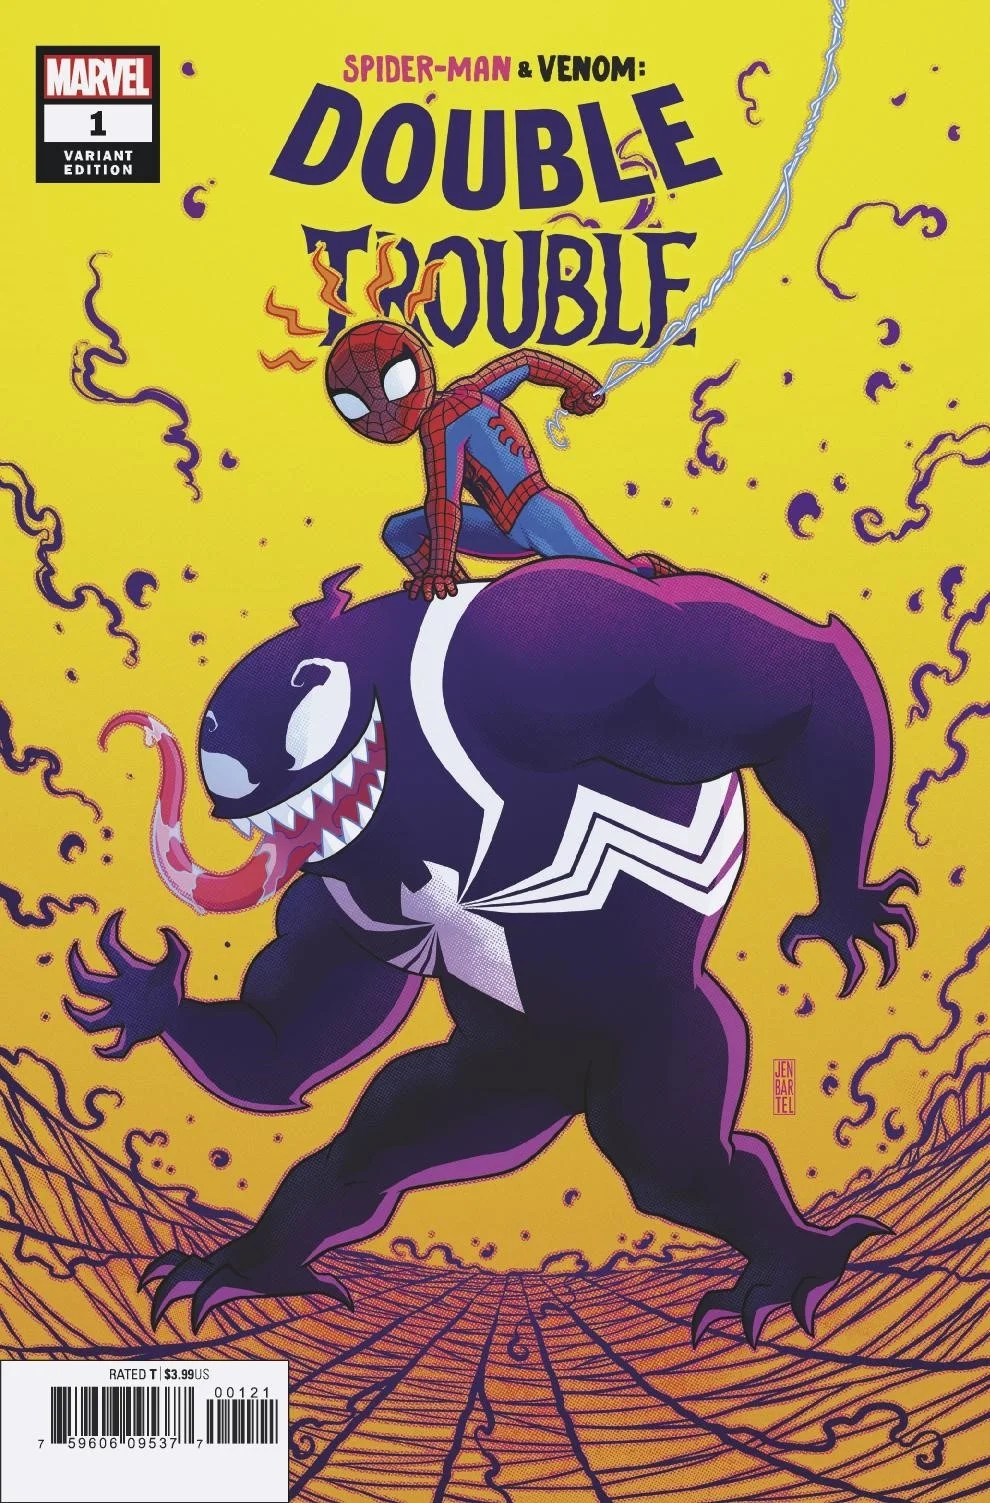 Человек-паук верхом на Веноме на альтернативных обложках к новому комиксу - фото 1